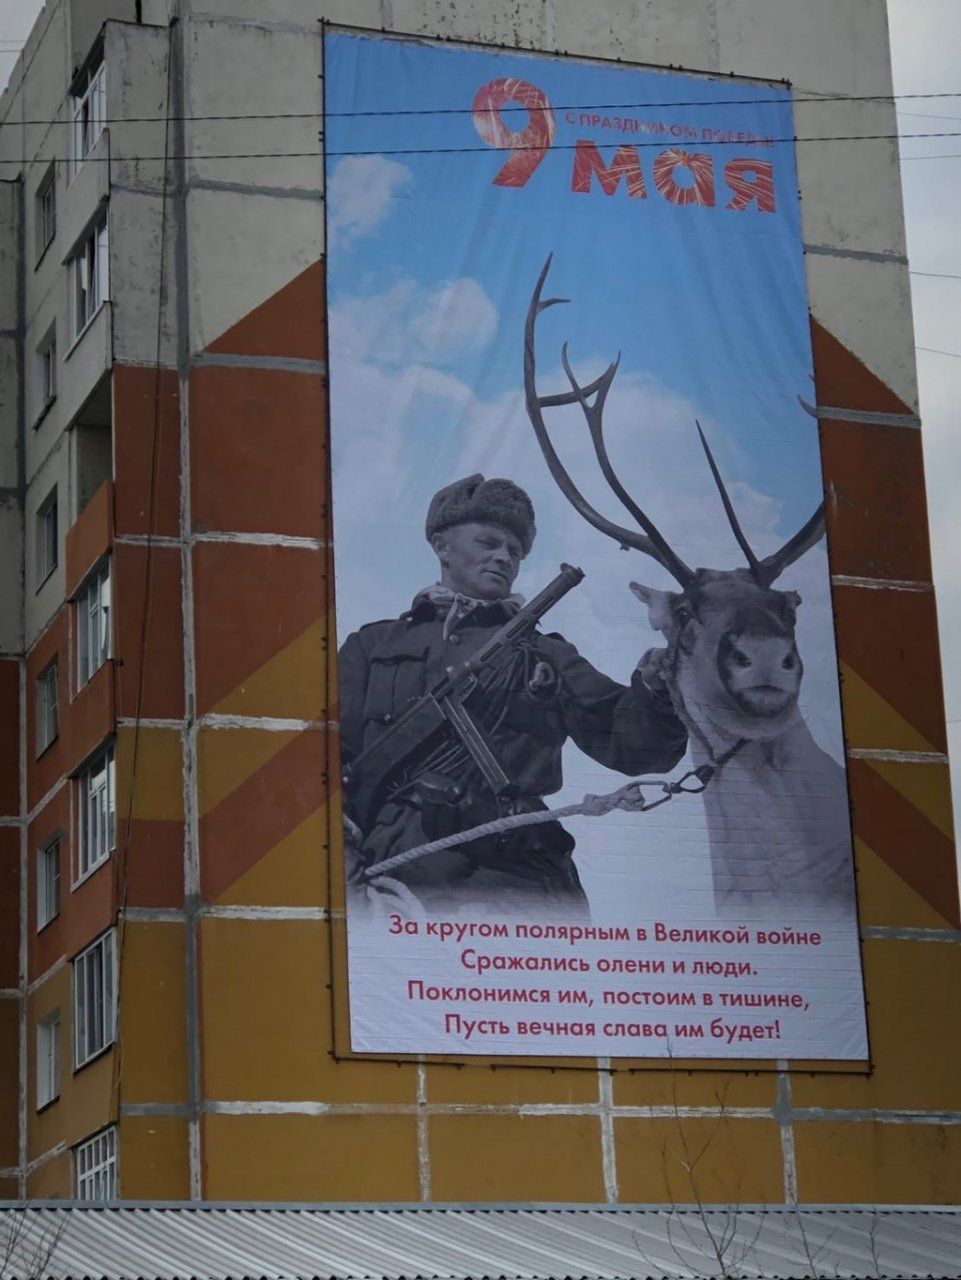 Разбор: что думают люди о финском солдате на баннере в Усинске